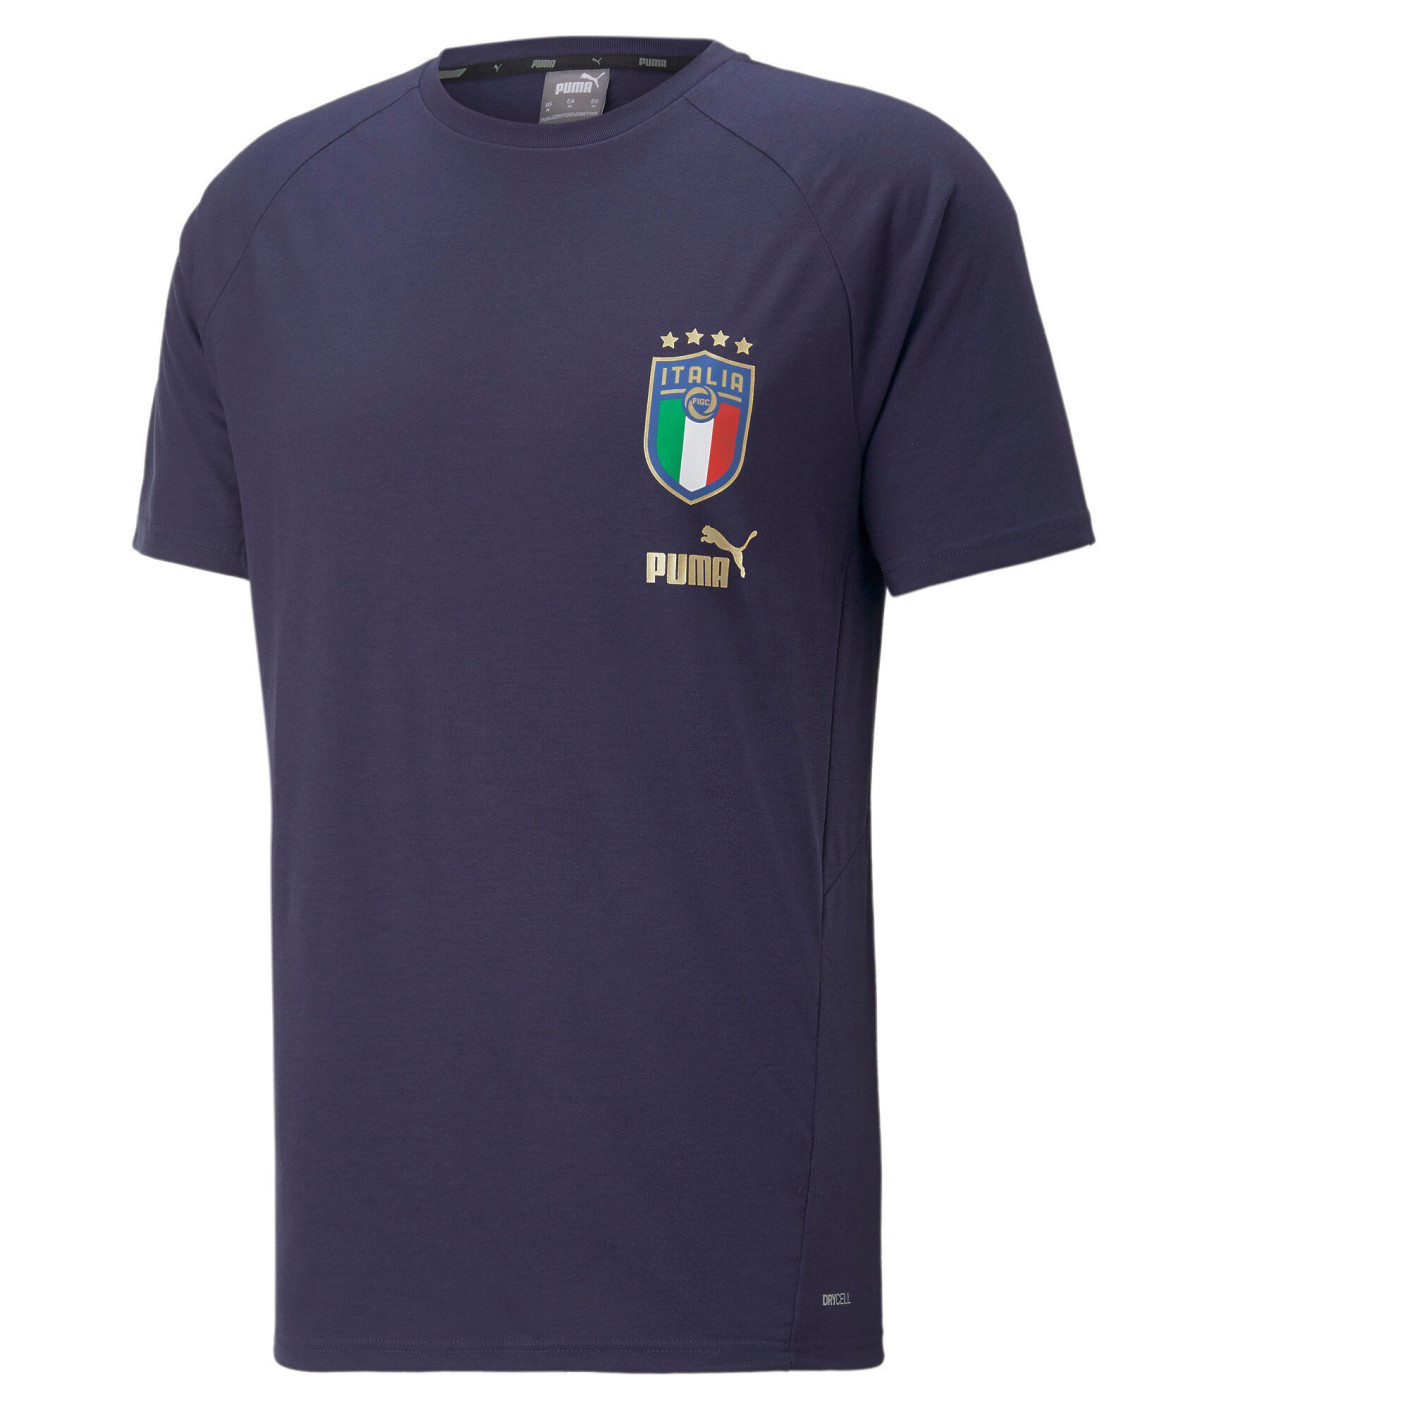 PUMA Italie Casual T-Shirt Bleu Foncé Doré